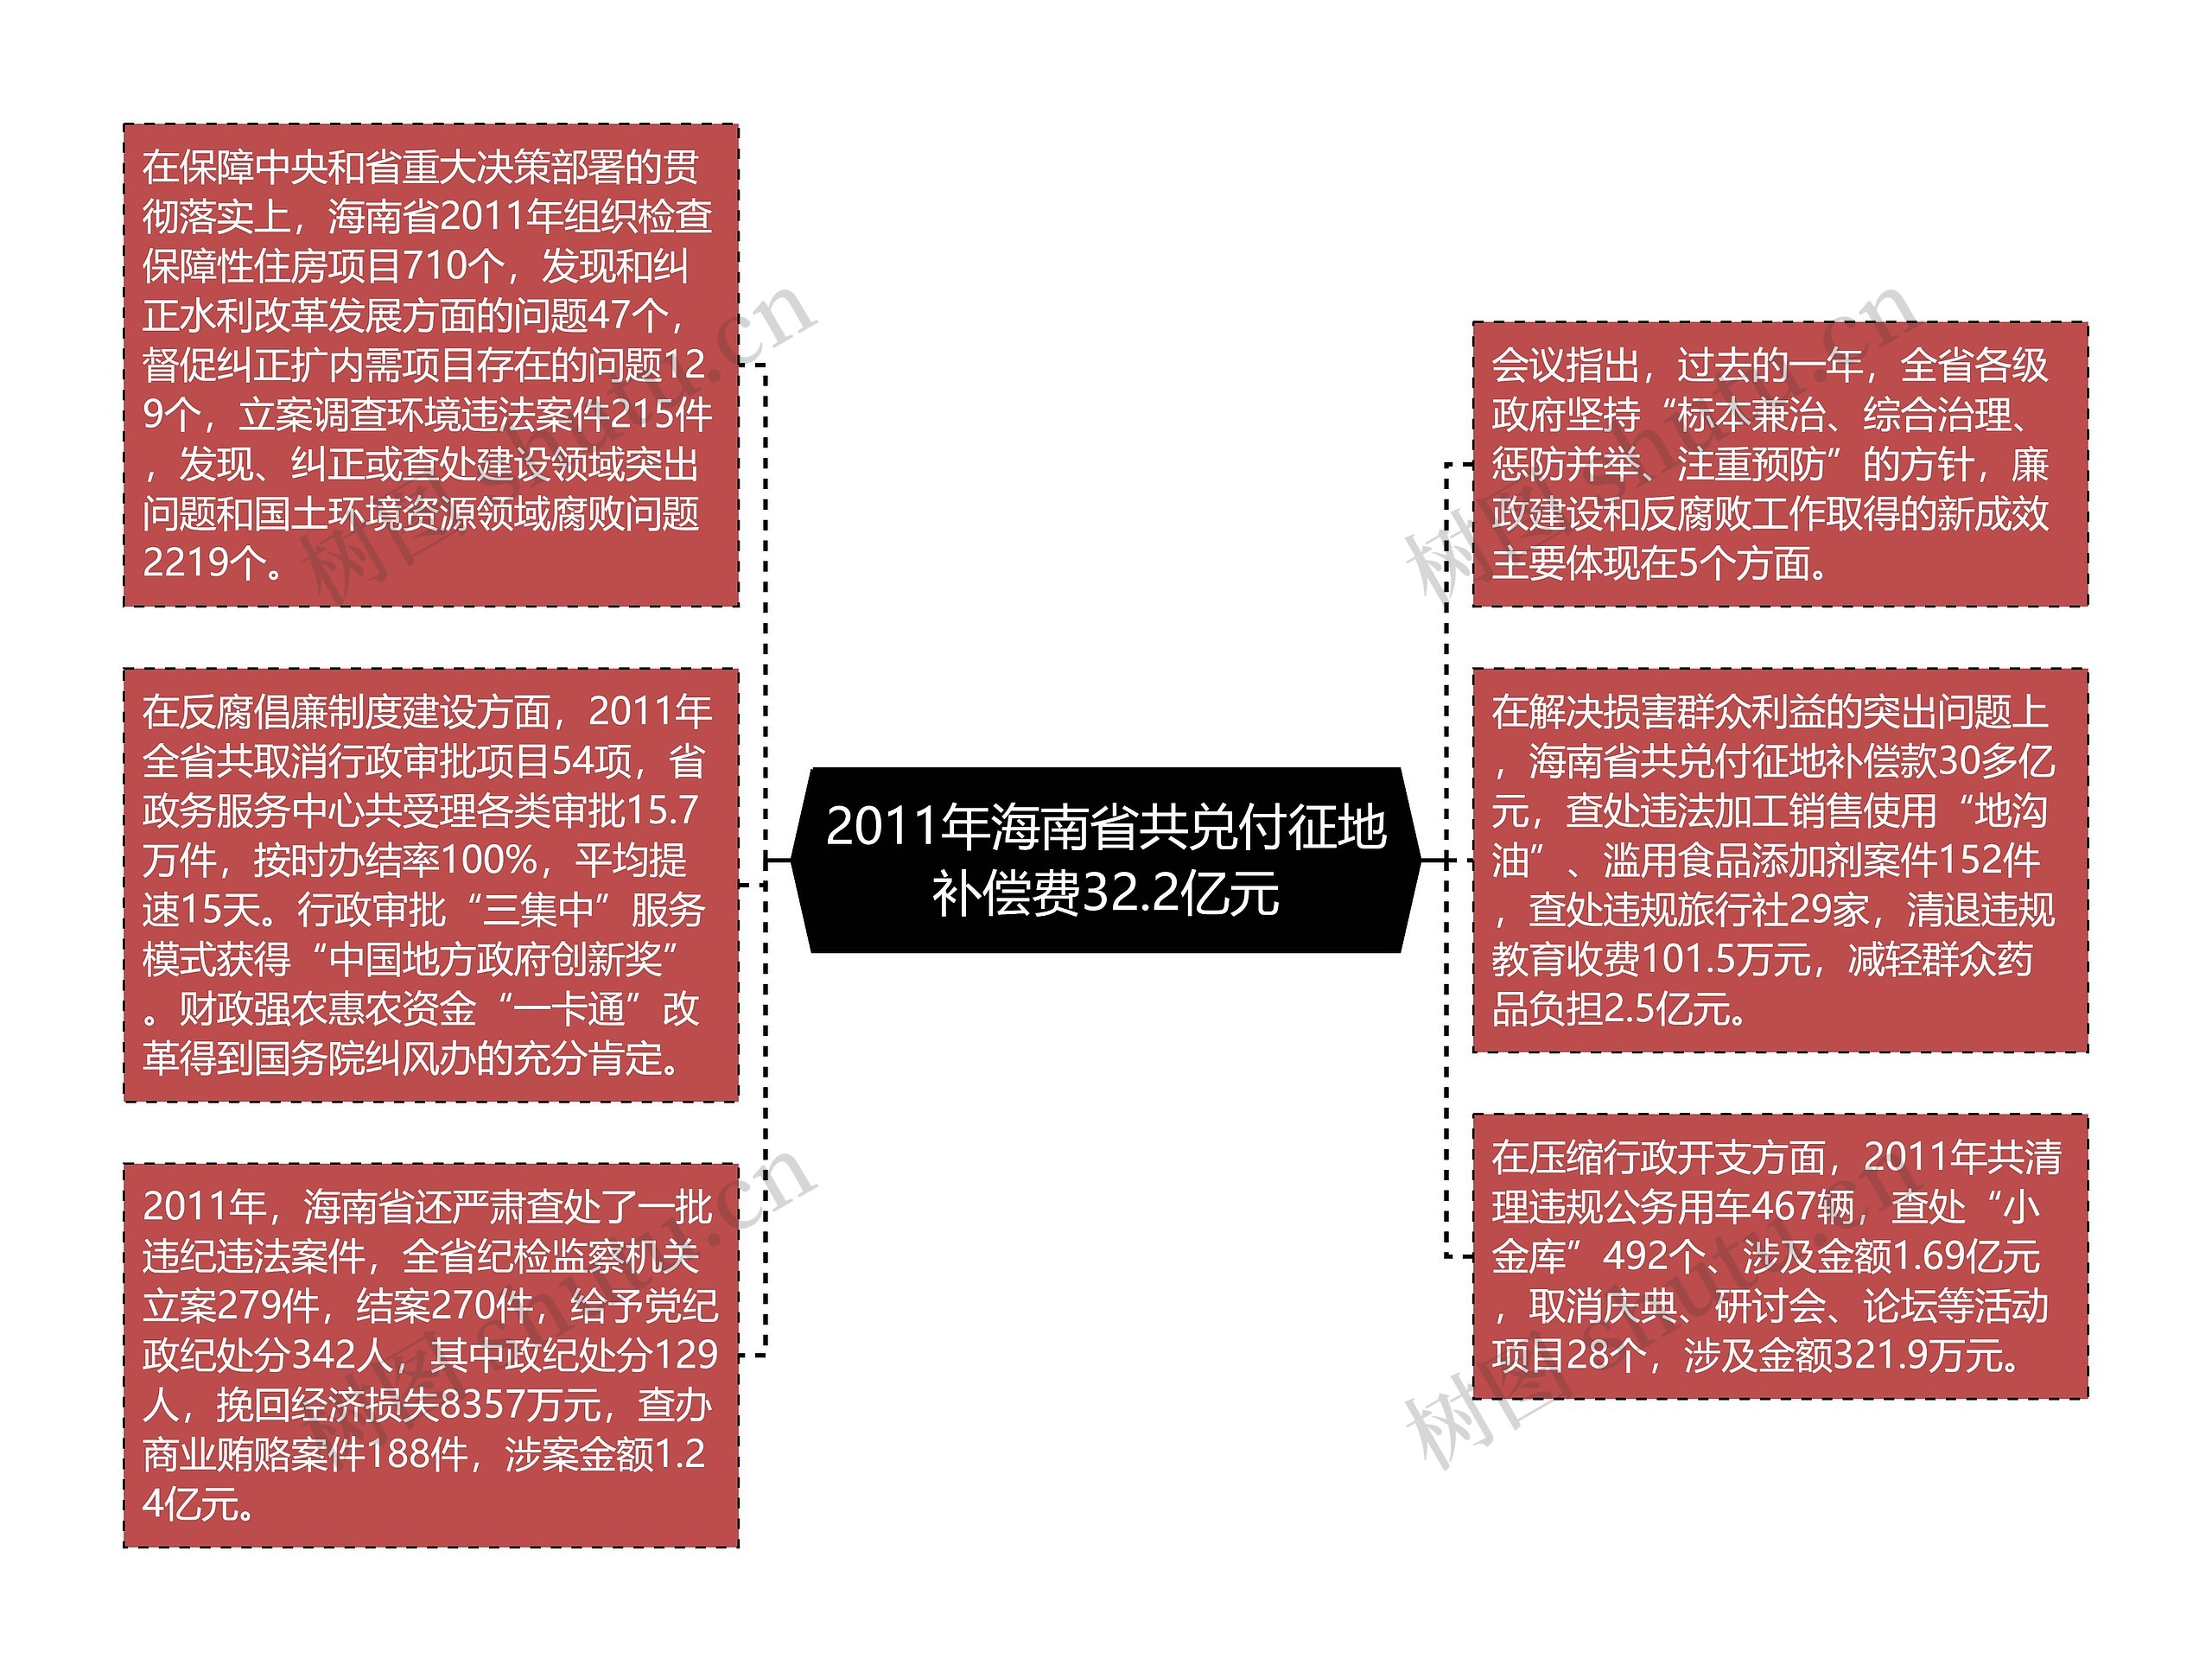 2011年海南省共兑付征地补偿费32.2亿元